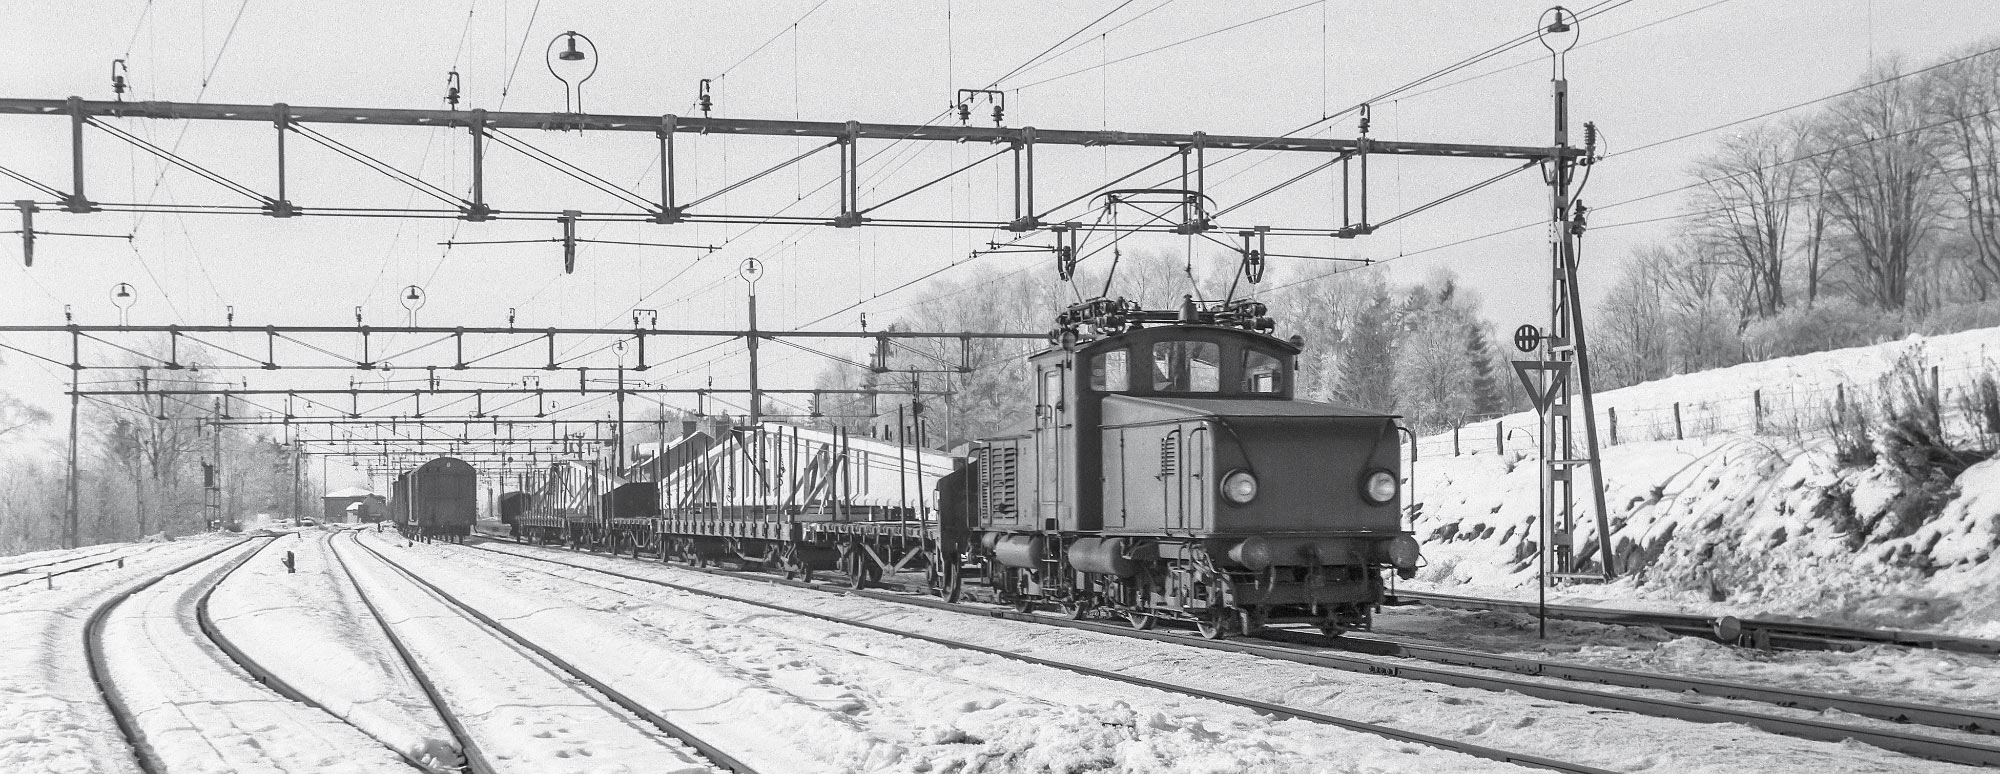 Hb-lok med godståg lastat med betongbalkar från Strängbetong i Kinna 1963